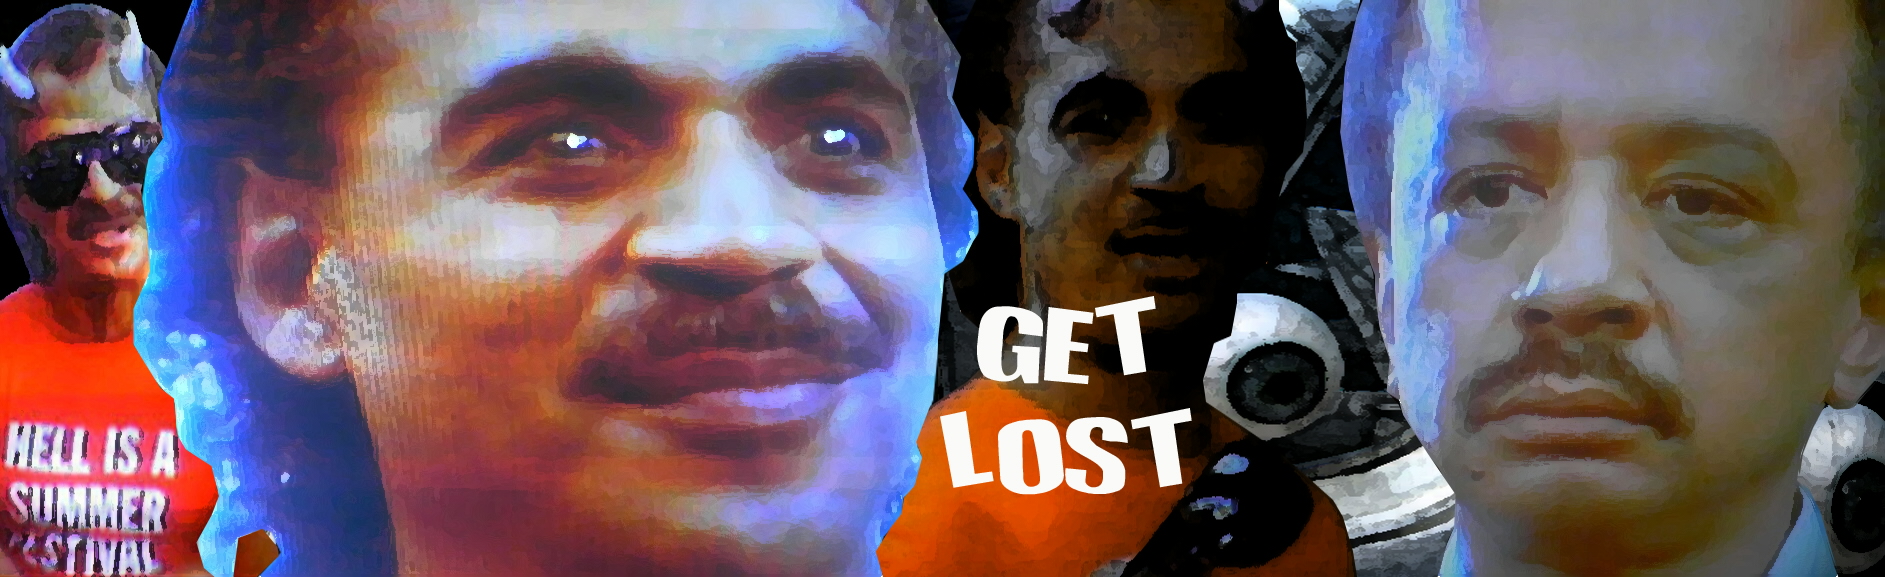 Get Lost 3